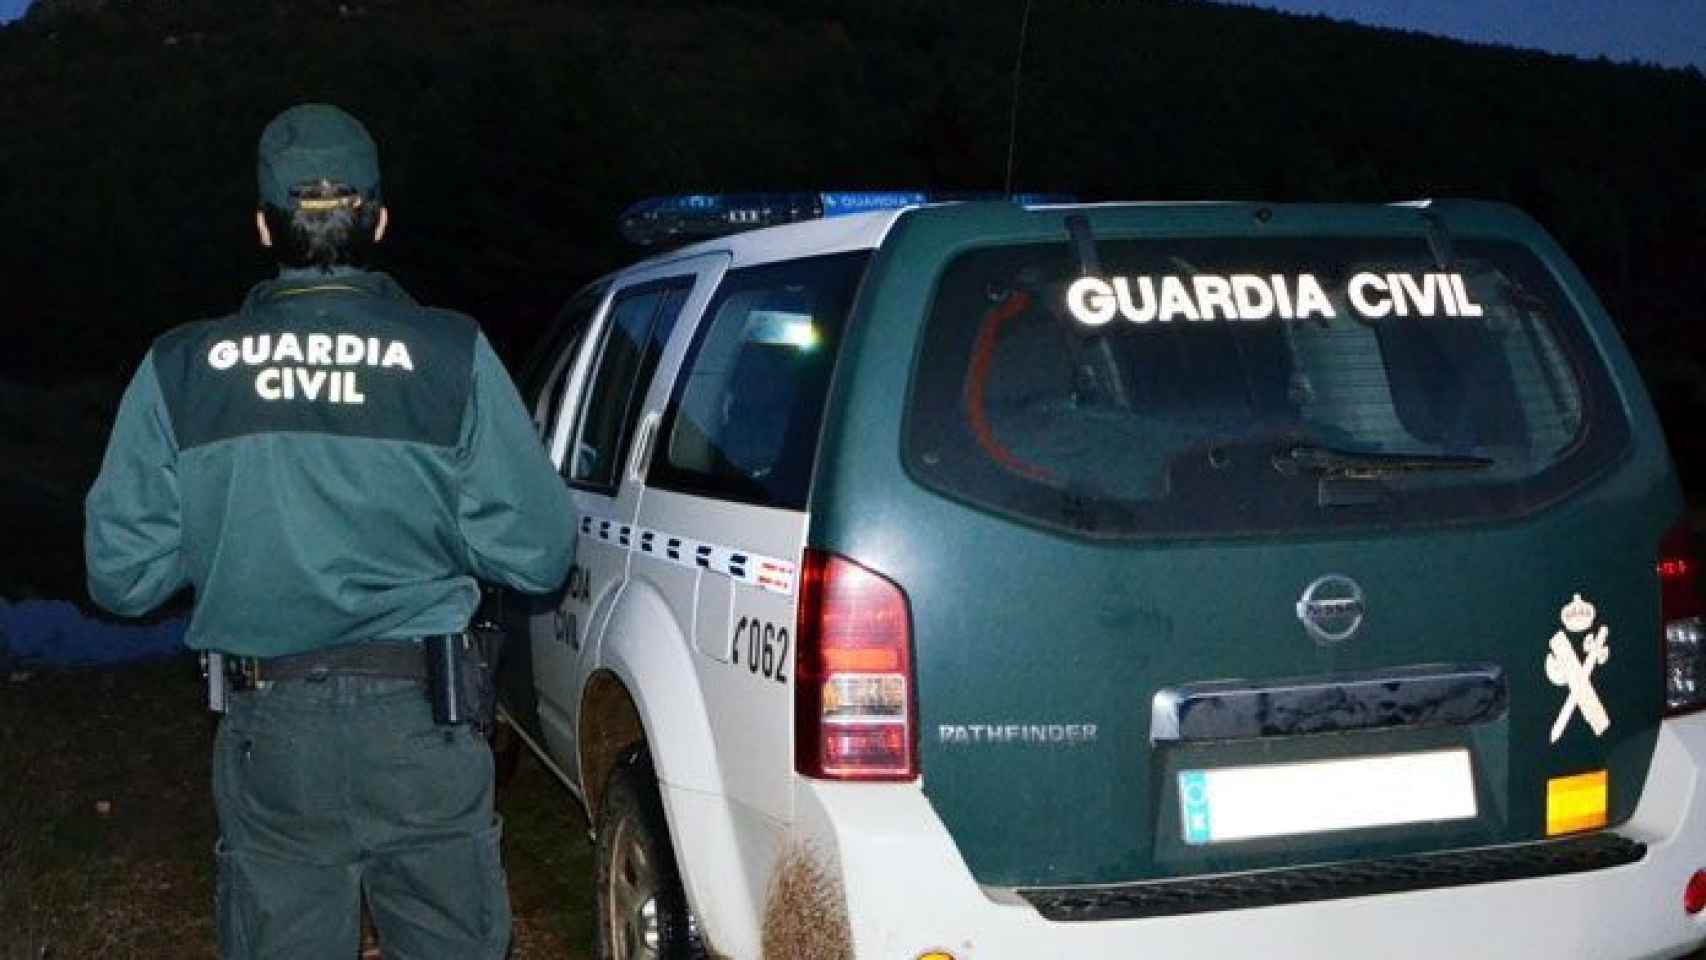 León-Guardia-Civil-vagina-quemar-detenido.